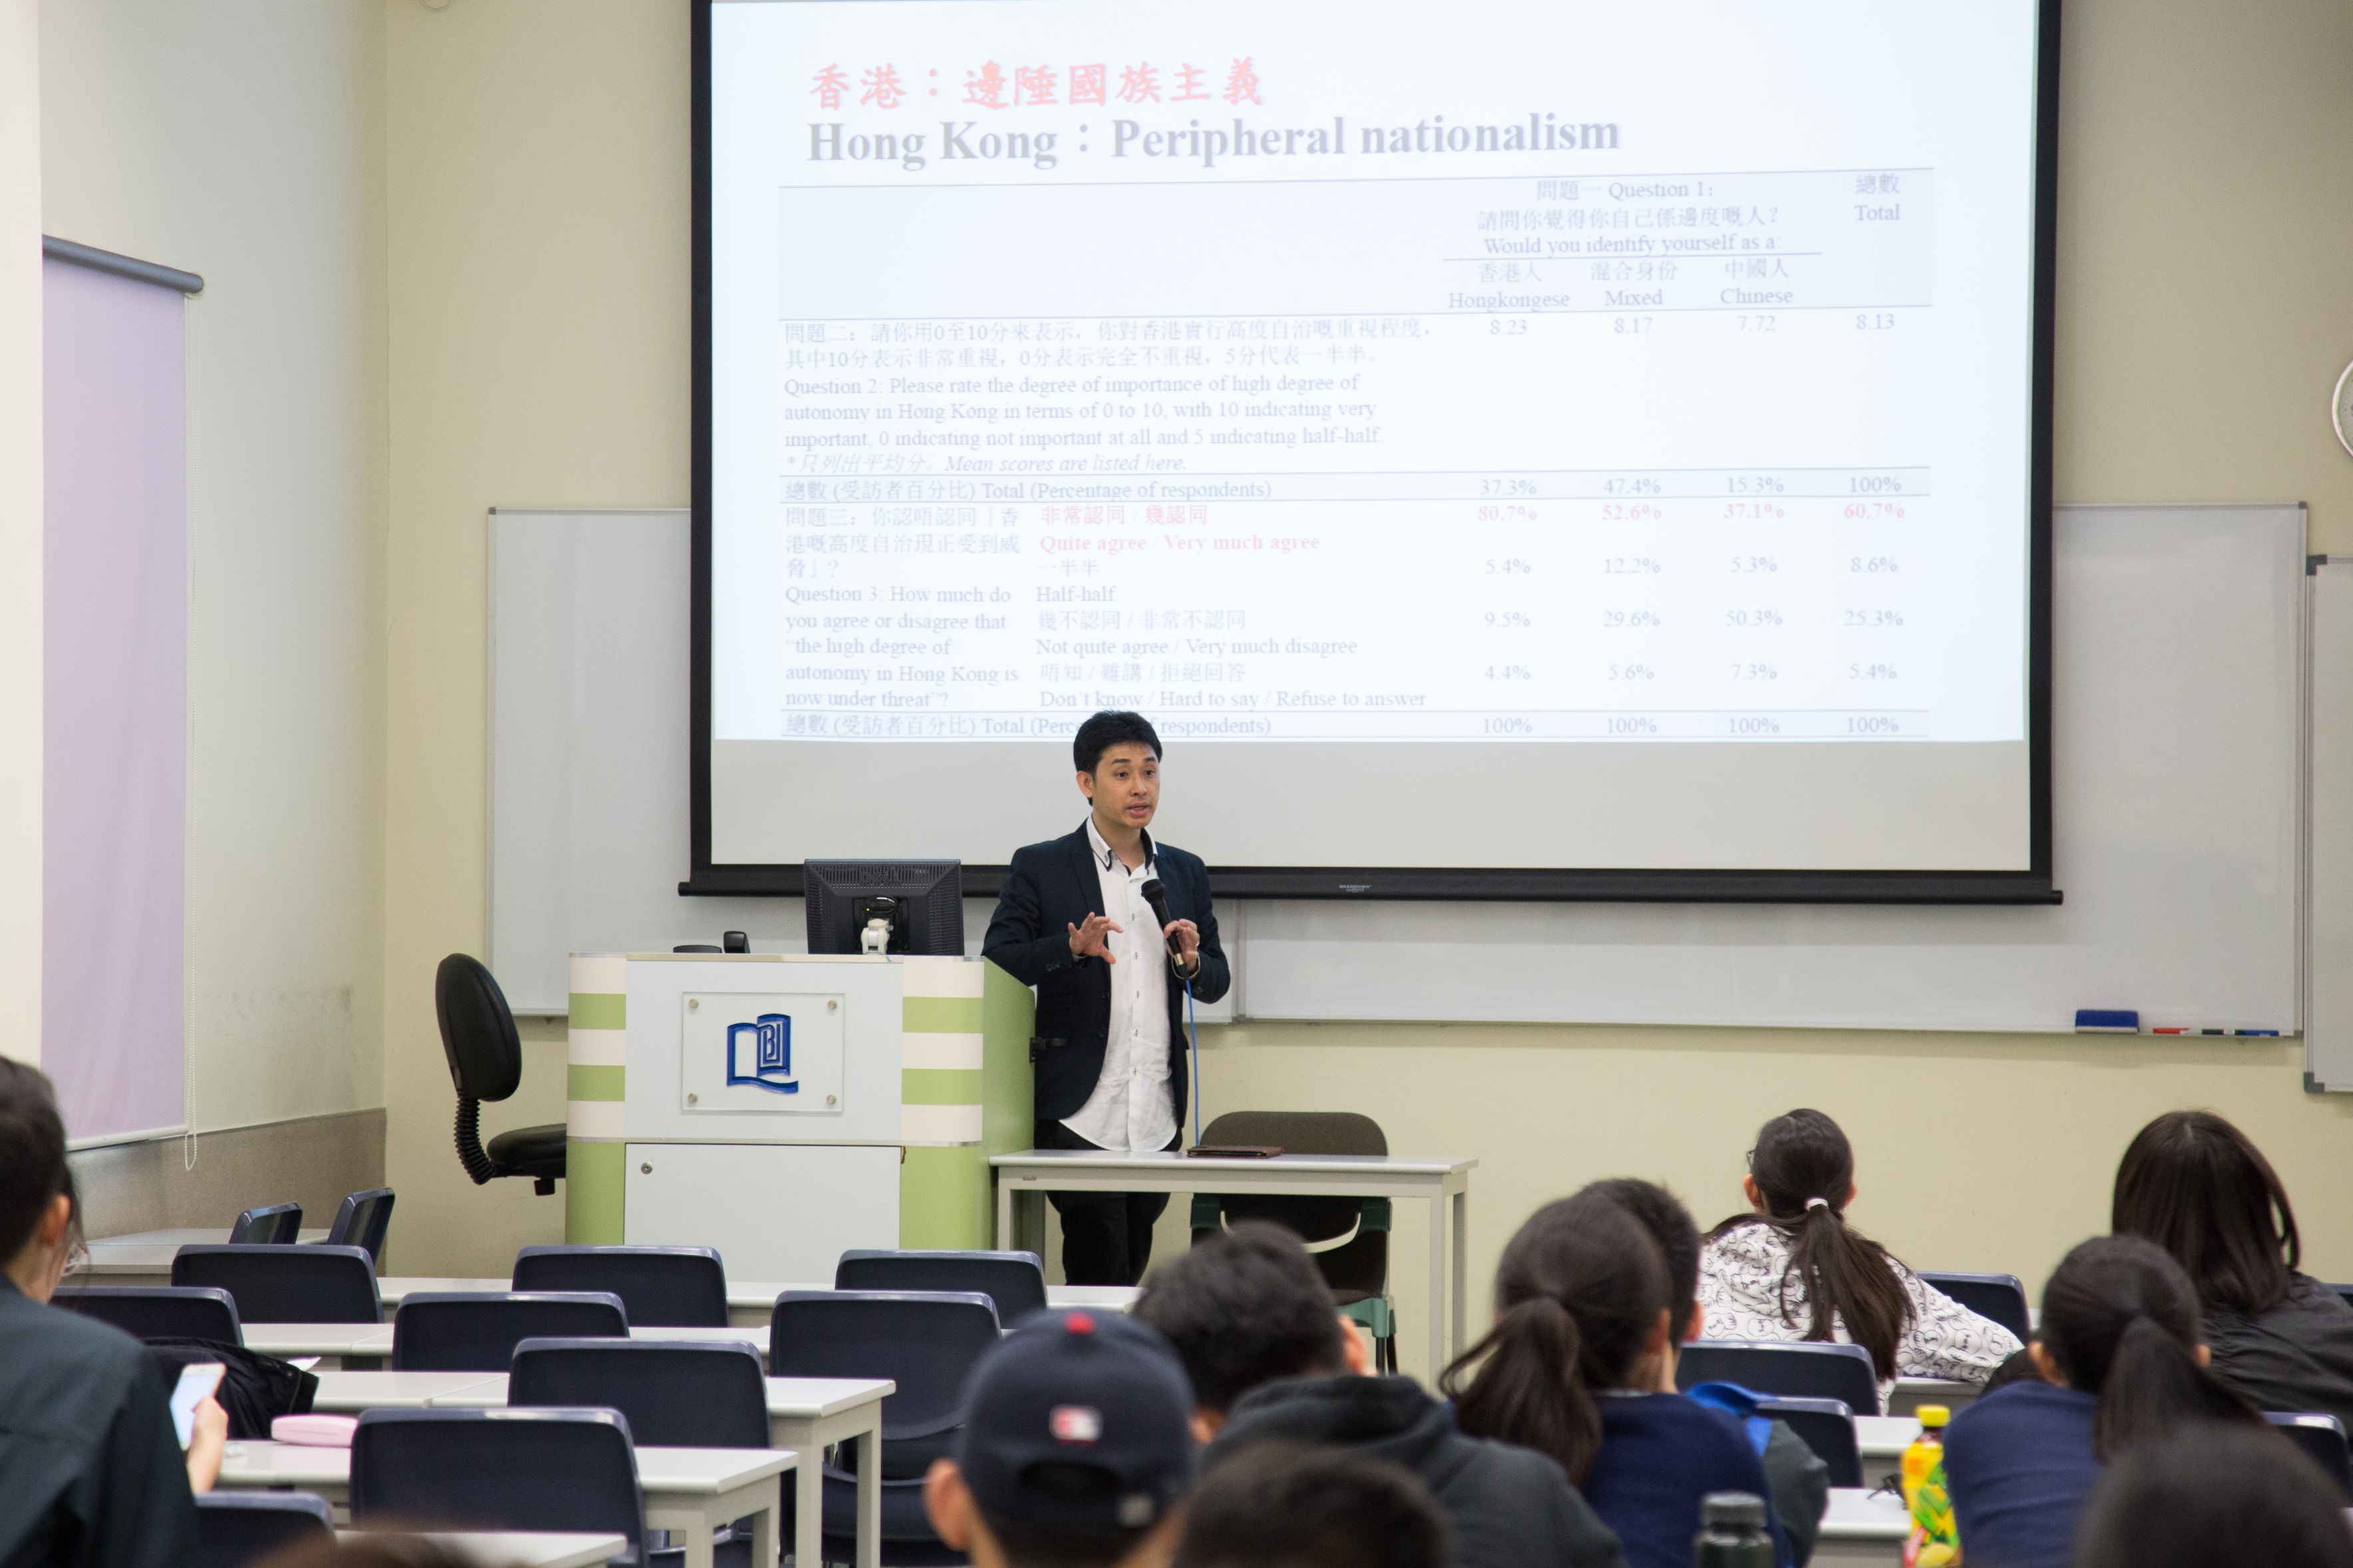 香港教育大学副教授暨香港研究学院副总监方志恒博士在「中国因素与香港前途」讲座上分享他对于中港关系的过去与未来的看法。 